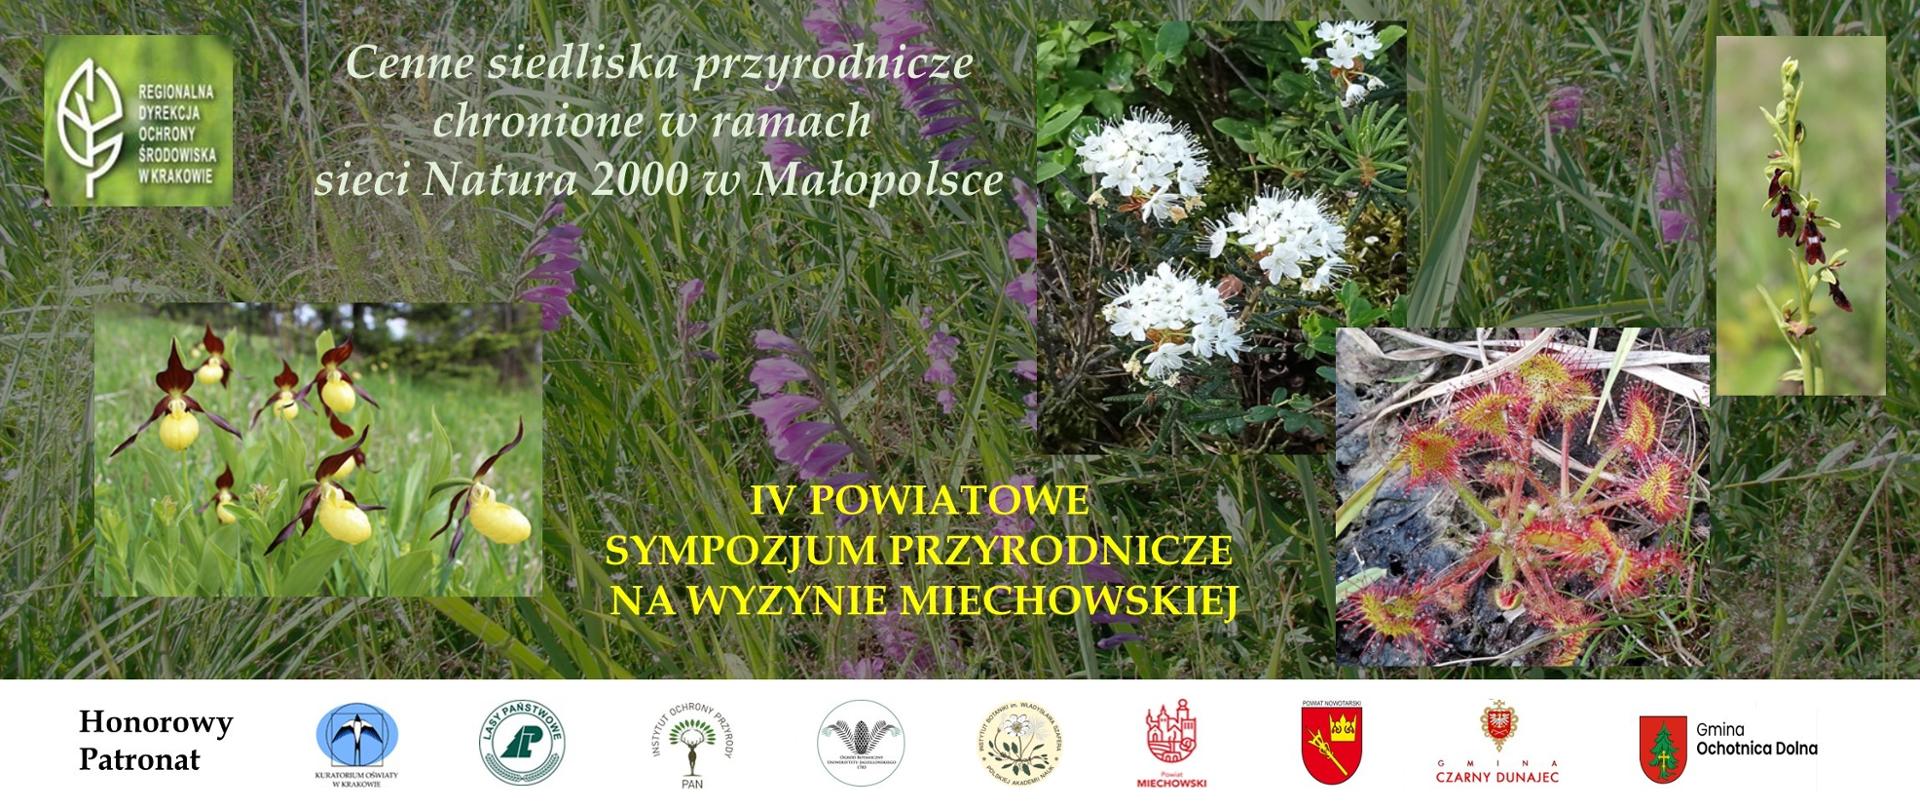 Plakat reklamujący IV Powiatowe Sympozjum Przyrodnicze na Wyżynie Miechowskiej dot. Cennych siedlisk przyrodniczych chronionych w ramach sieci Natura 2000 w Małopolsce. Oprócz nazwy wydarzenia na plakacie umieszczono kilka zdjęć chronionych roślin.